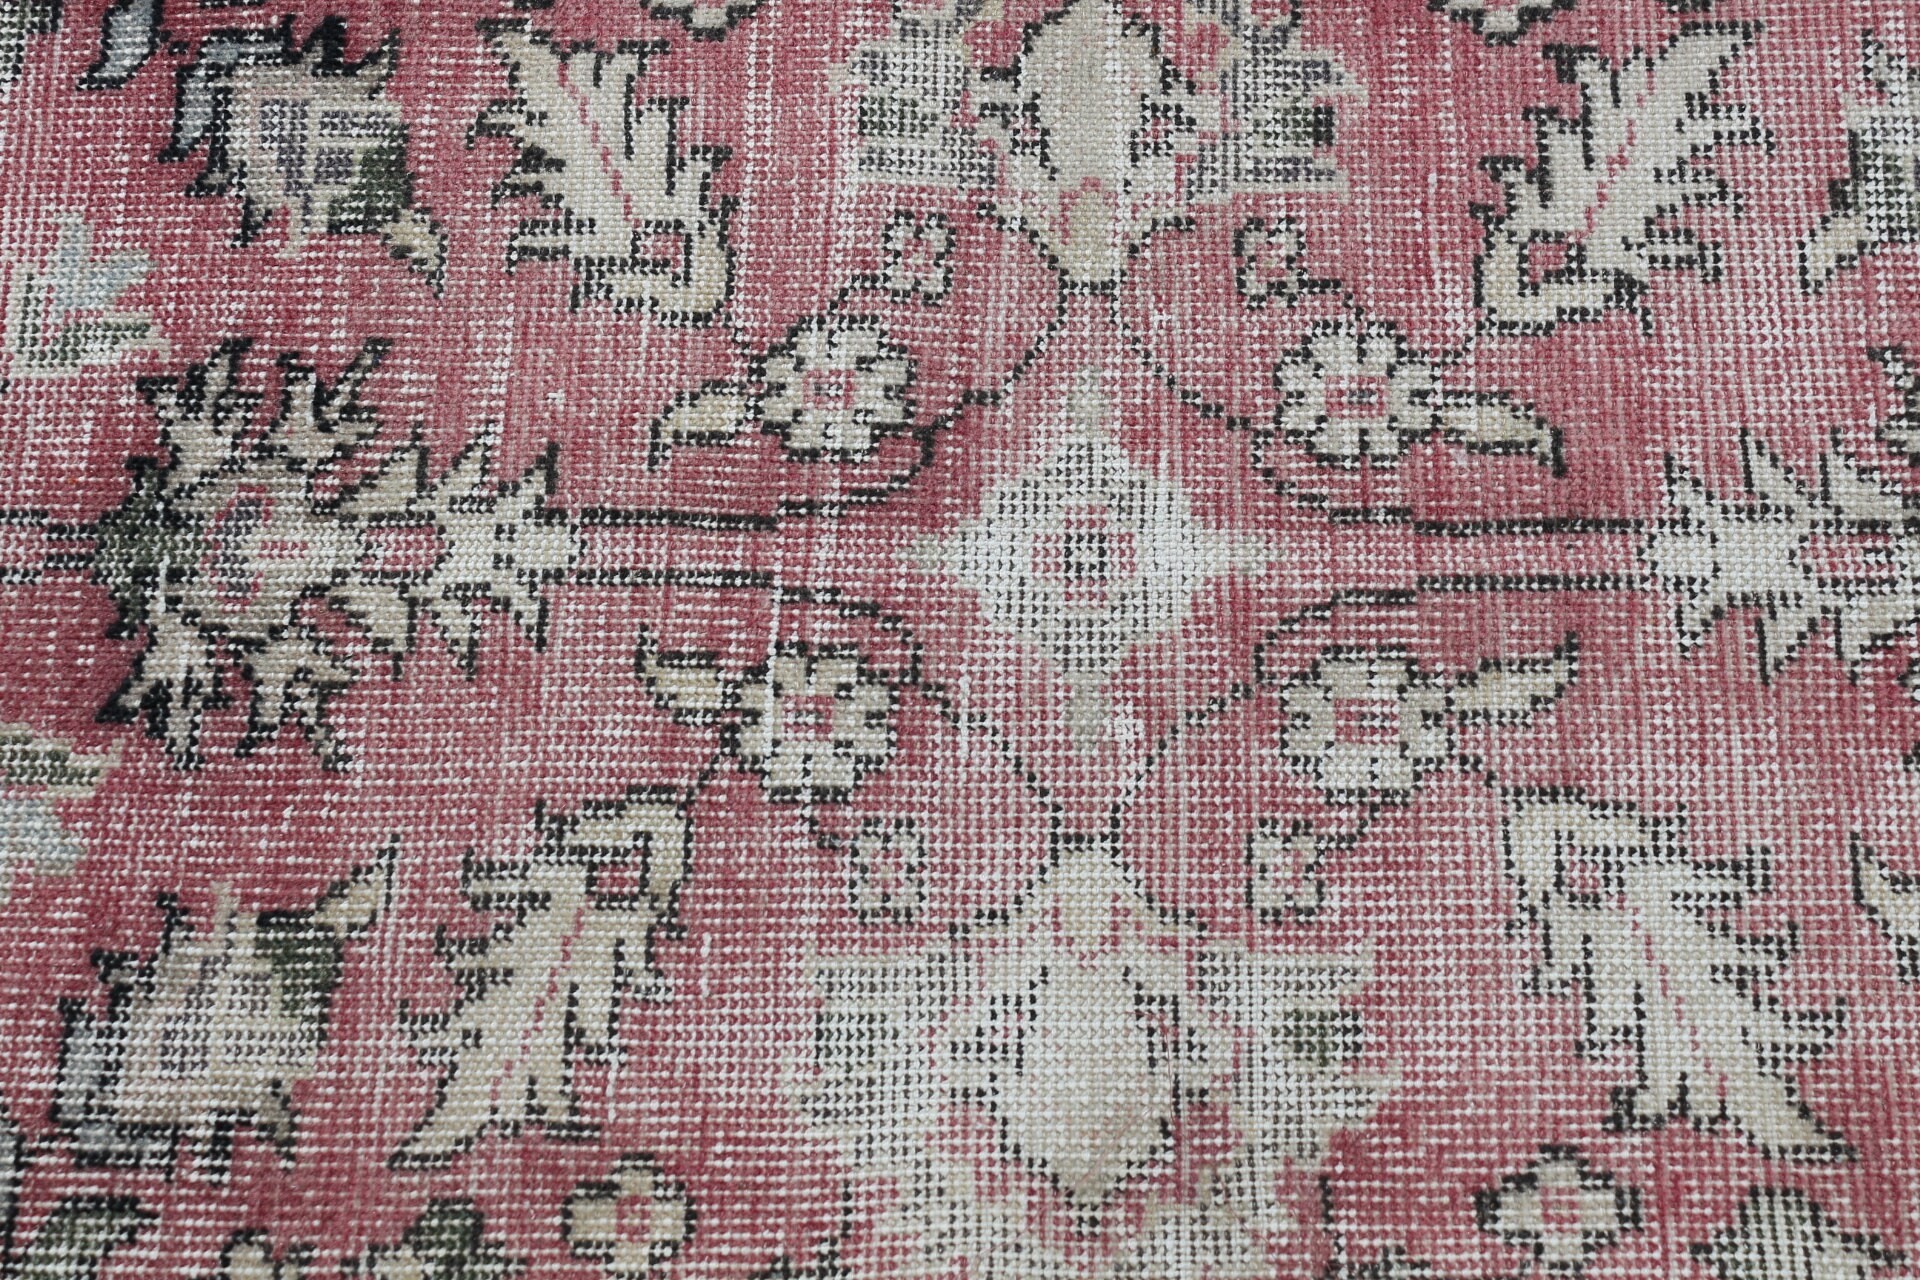 Vintage Rug, Custom Rug, 2.1x5.2 ft Small Rug, Entry Rugs, Moroccan Rugs, Wall Hanging Rug, Pink Floor Rugs, Turkish Rug